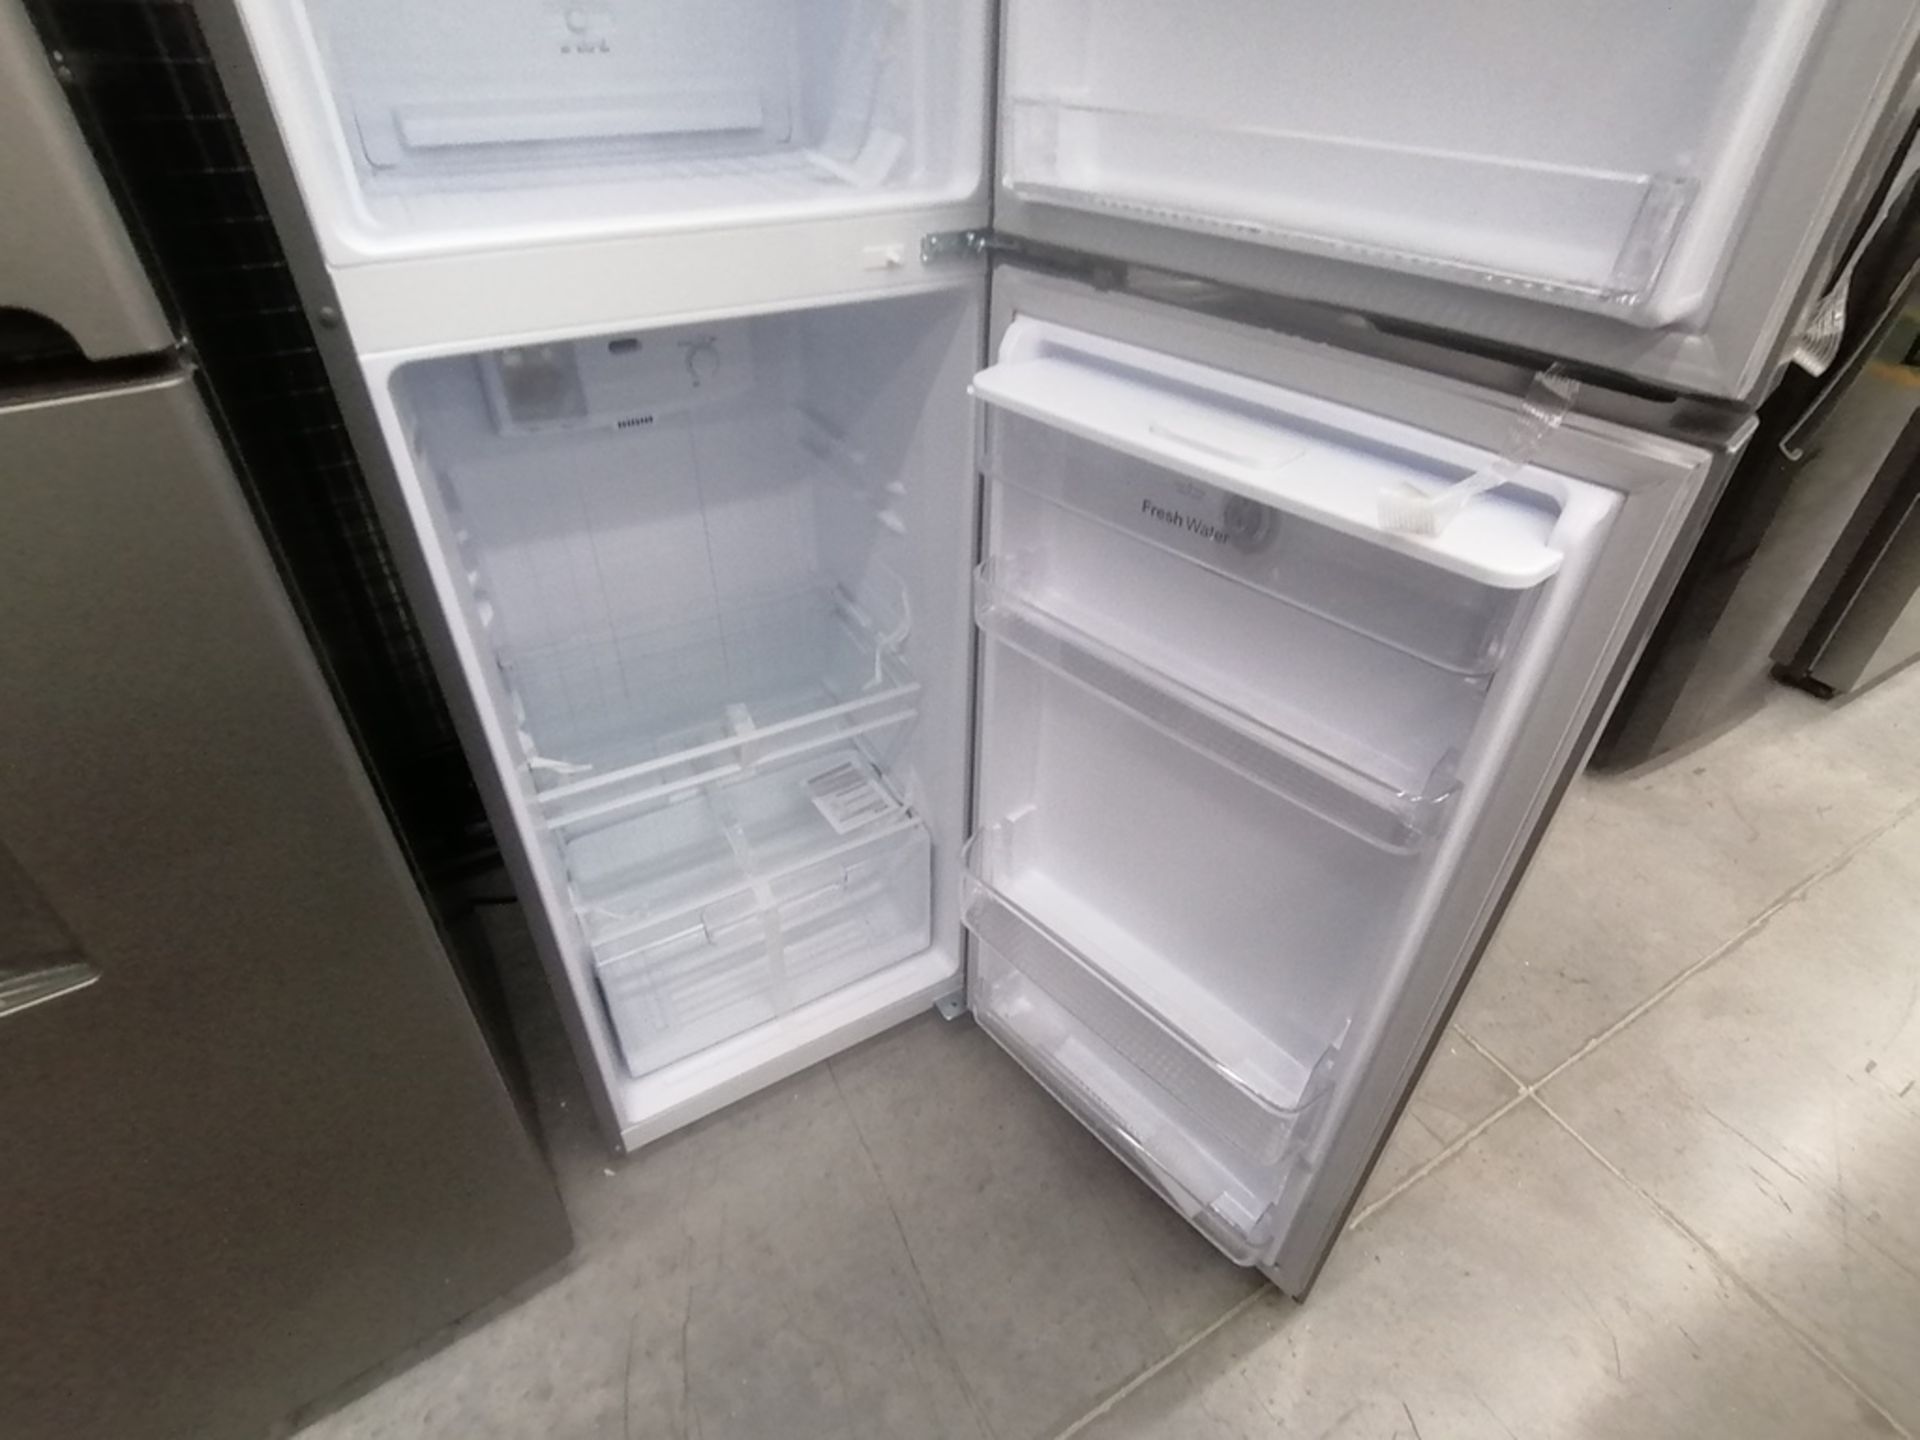 Lote de 2 refrigeradores incluye: 1 Refrigerador con dispensador de agua, Marca Winia, Modelo DFR32 - Image 10 of 15